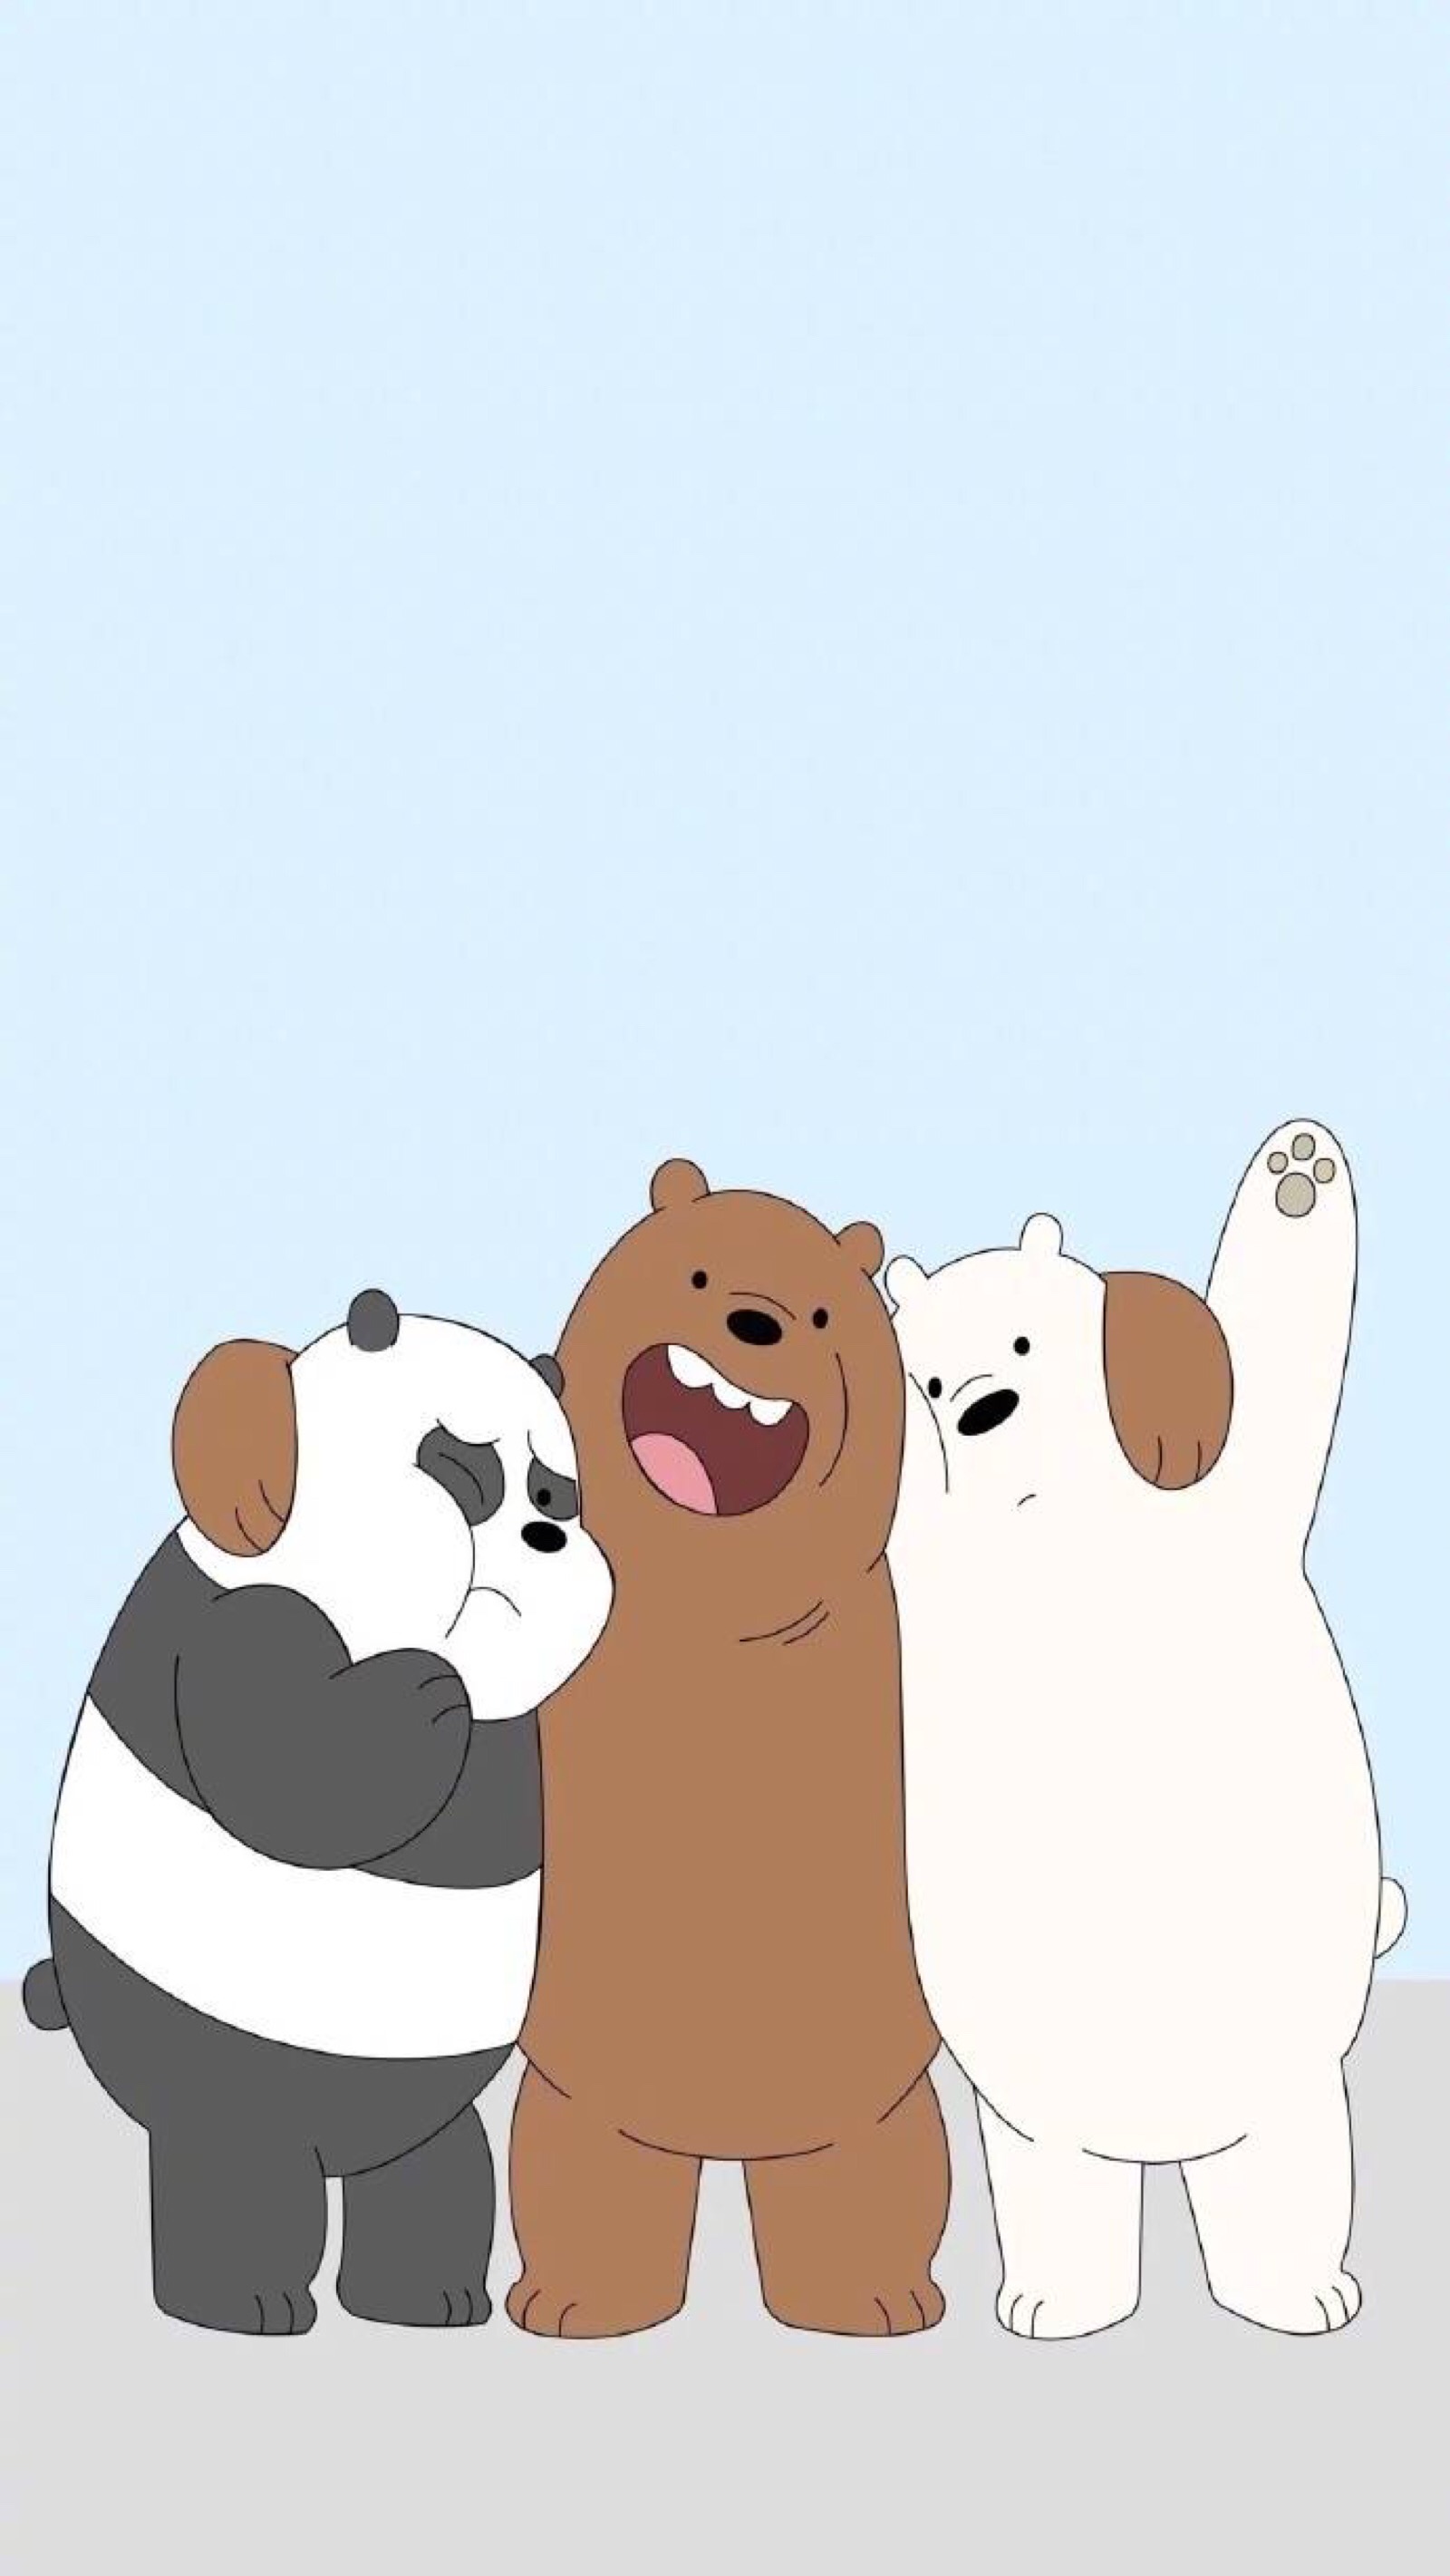 三只裸熊手机壁纸高清图片